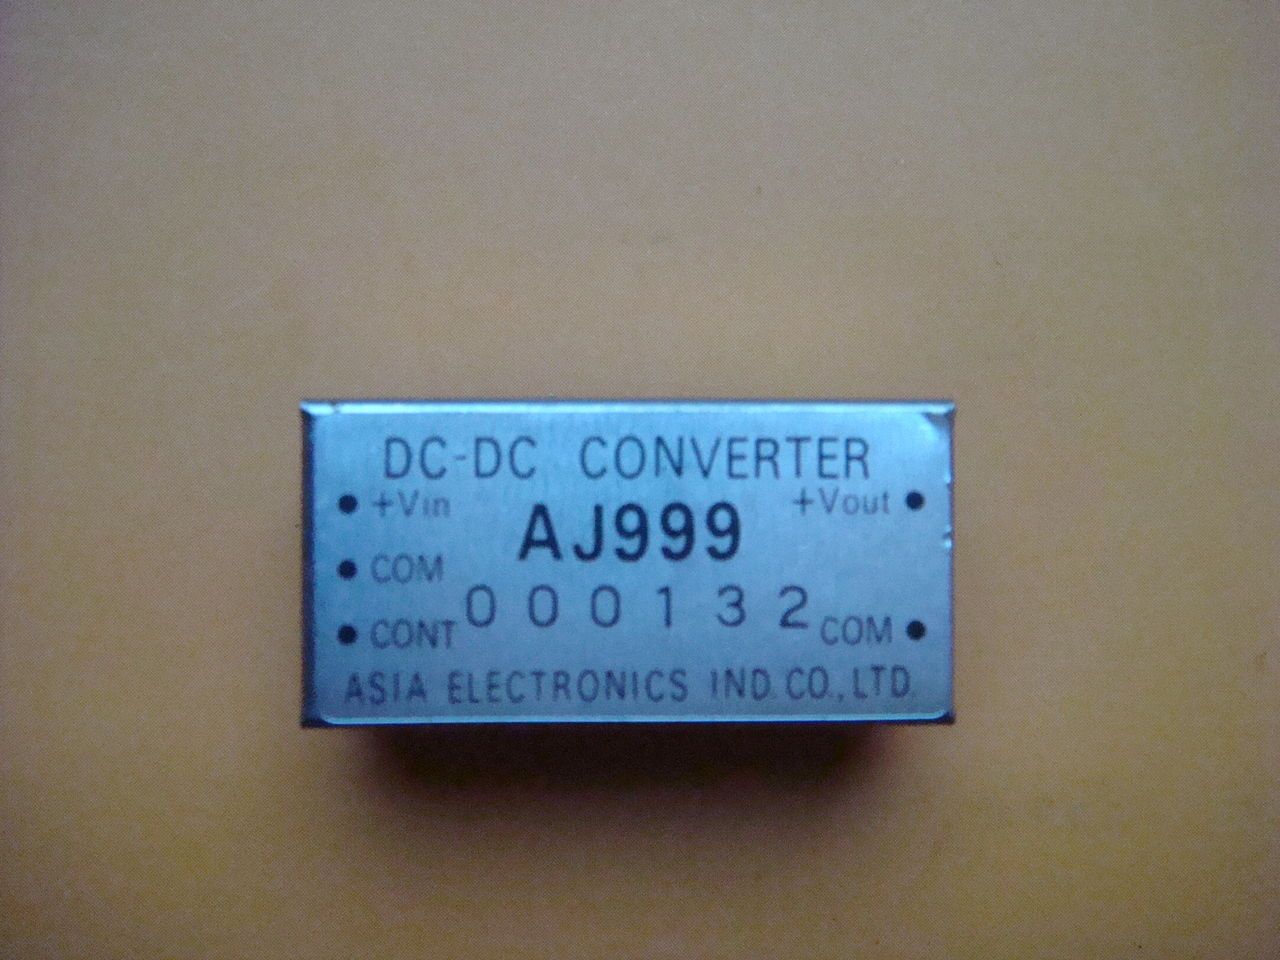 AJ999 DC-DC CONVERTER